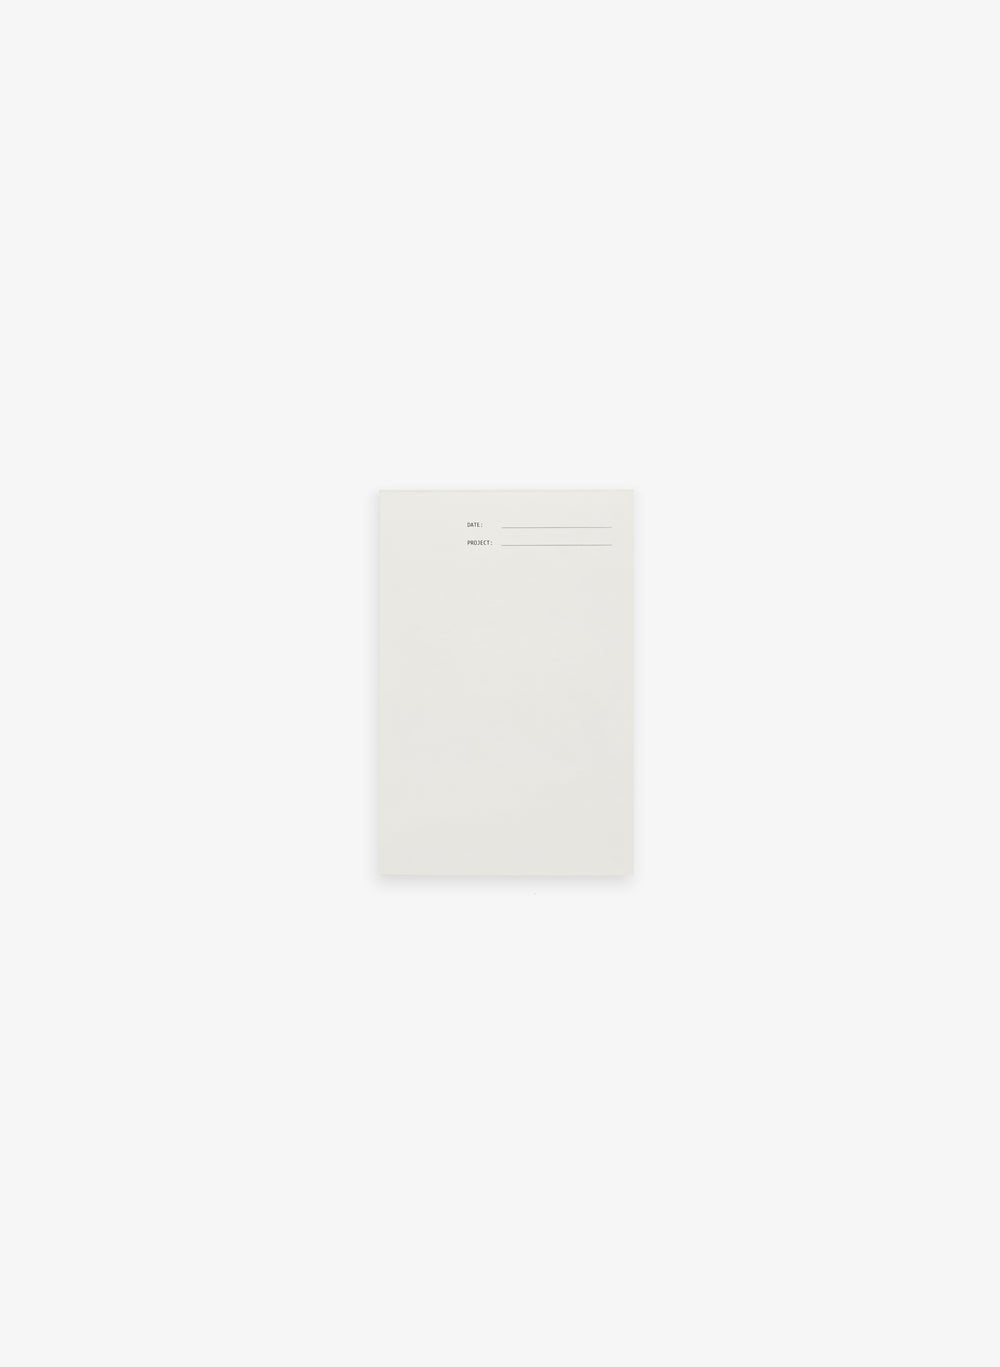 Blank Notepad 4 x 6 - Natural